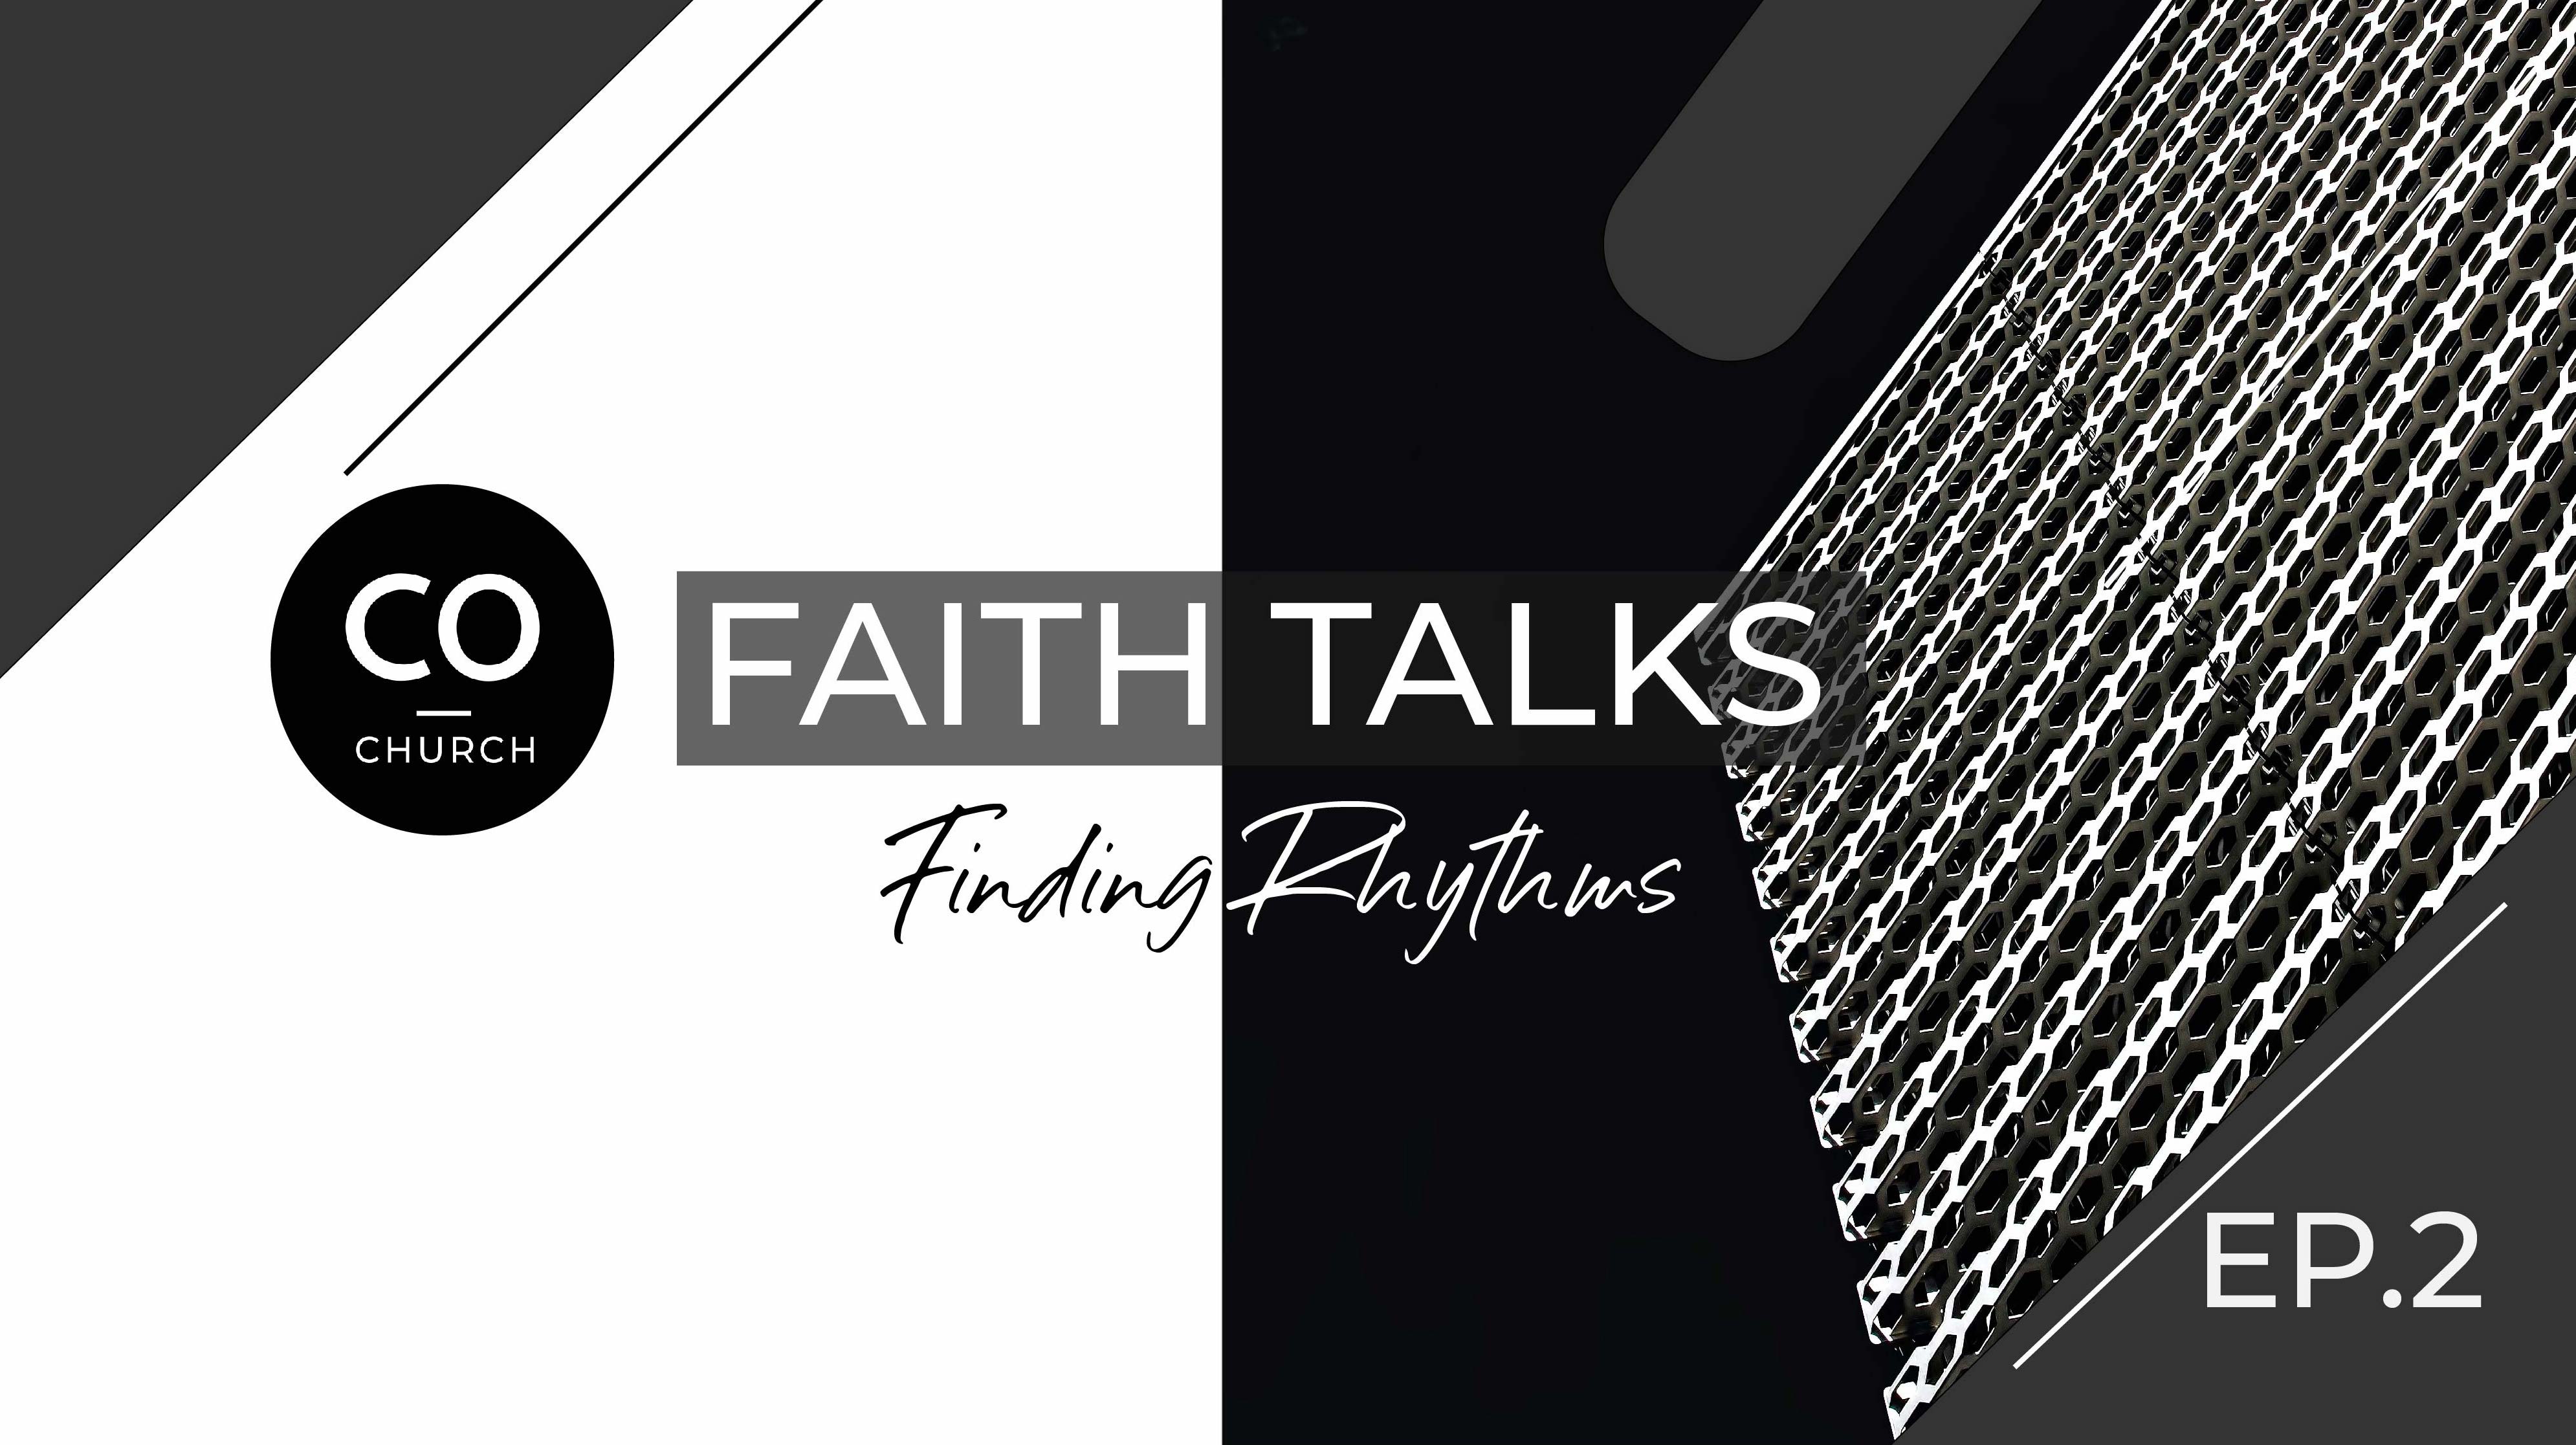 Faith Talk - Finding a Rhythm: Daily